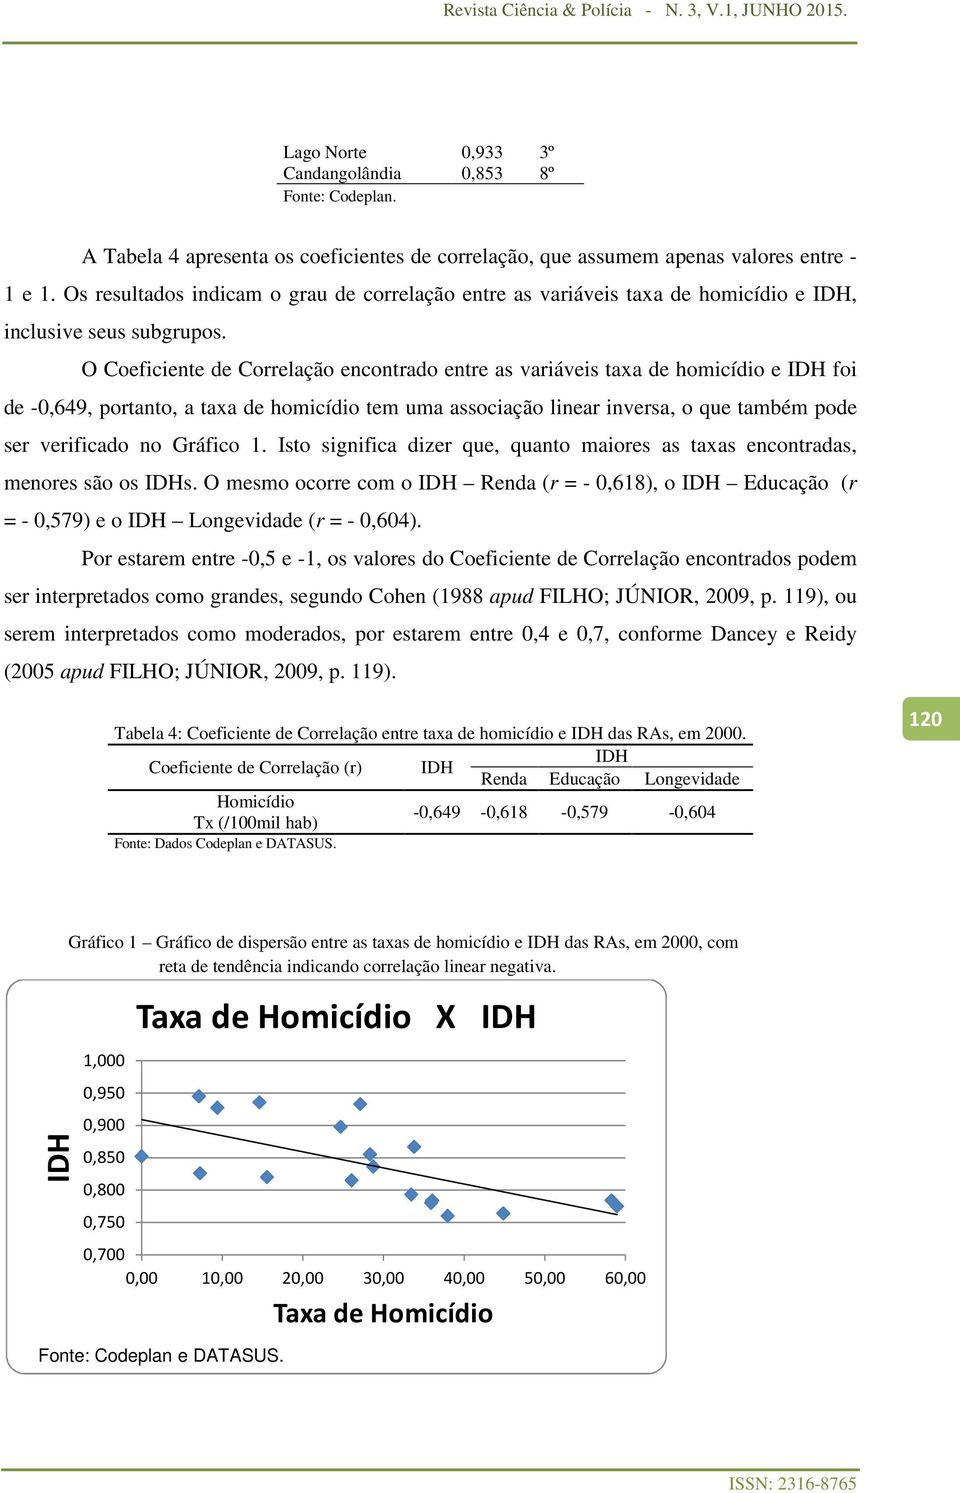 O Coeficiente de Correlação encontrado entre as variáveis taxa de homicídio e IDH foi de -0,649, portanto, a taxa de homicídio tem uma associação linear inversa, o que também pode ser verificado no